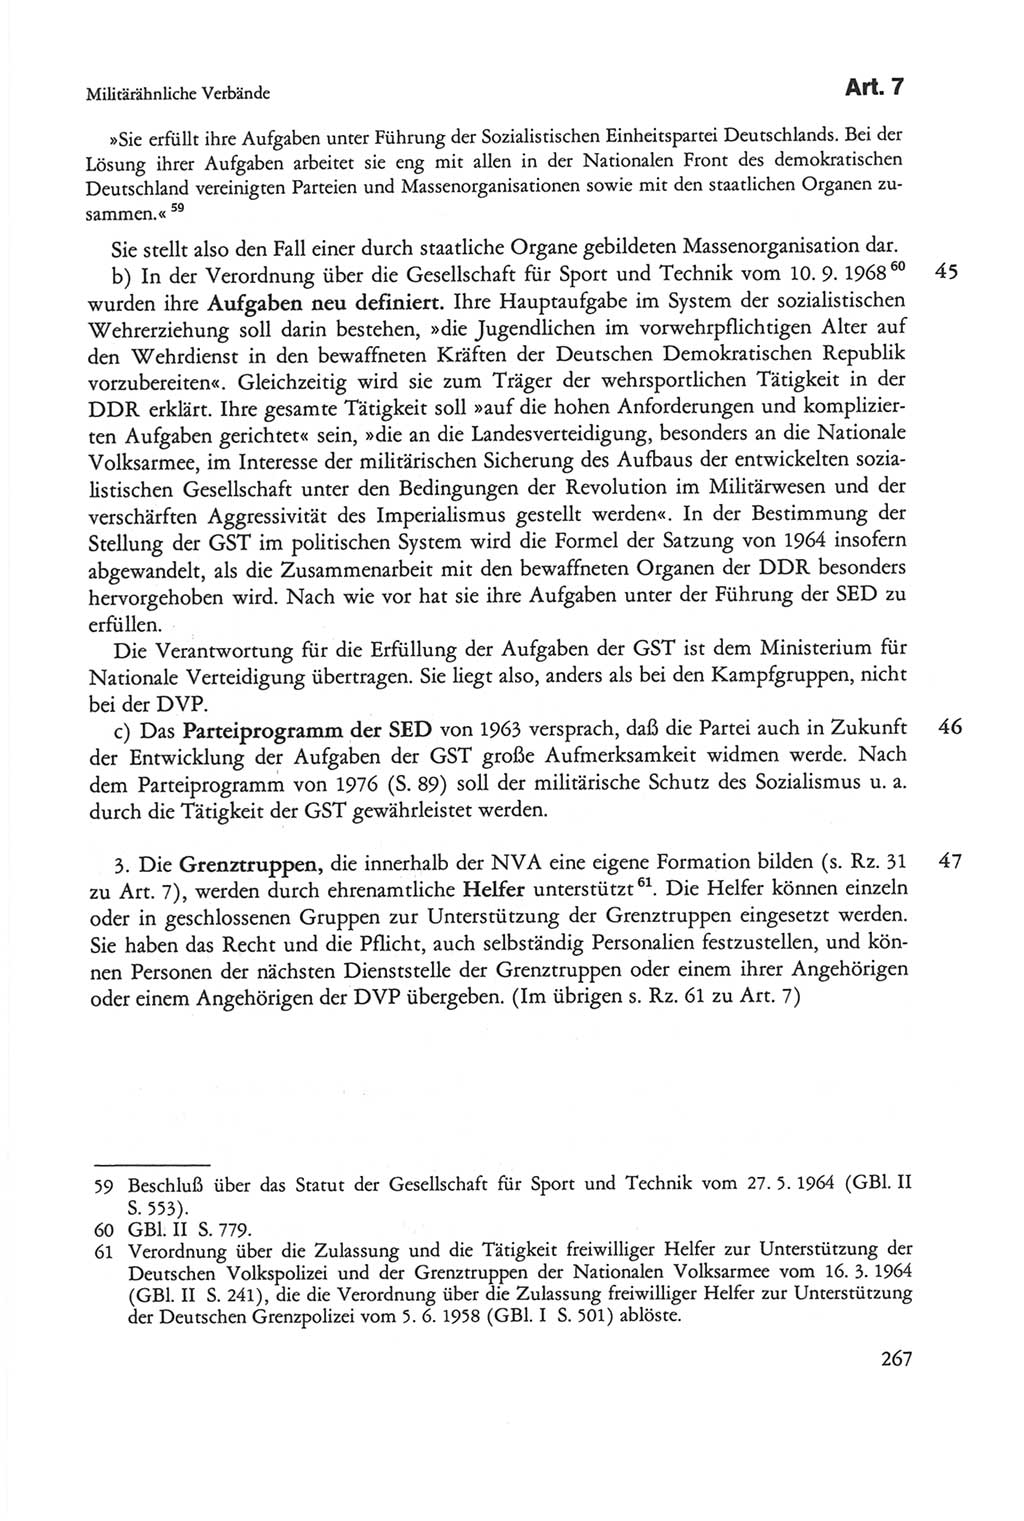 Die sozialistische Verfassung der Deutschen Demokratischen Republik (DDR), Kommentar 1982, Seite 267 (Soz. Verf. DDR Komm. 1982, S. 267)